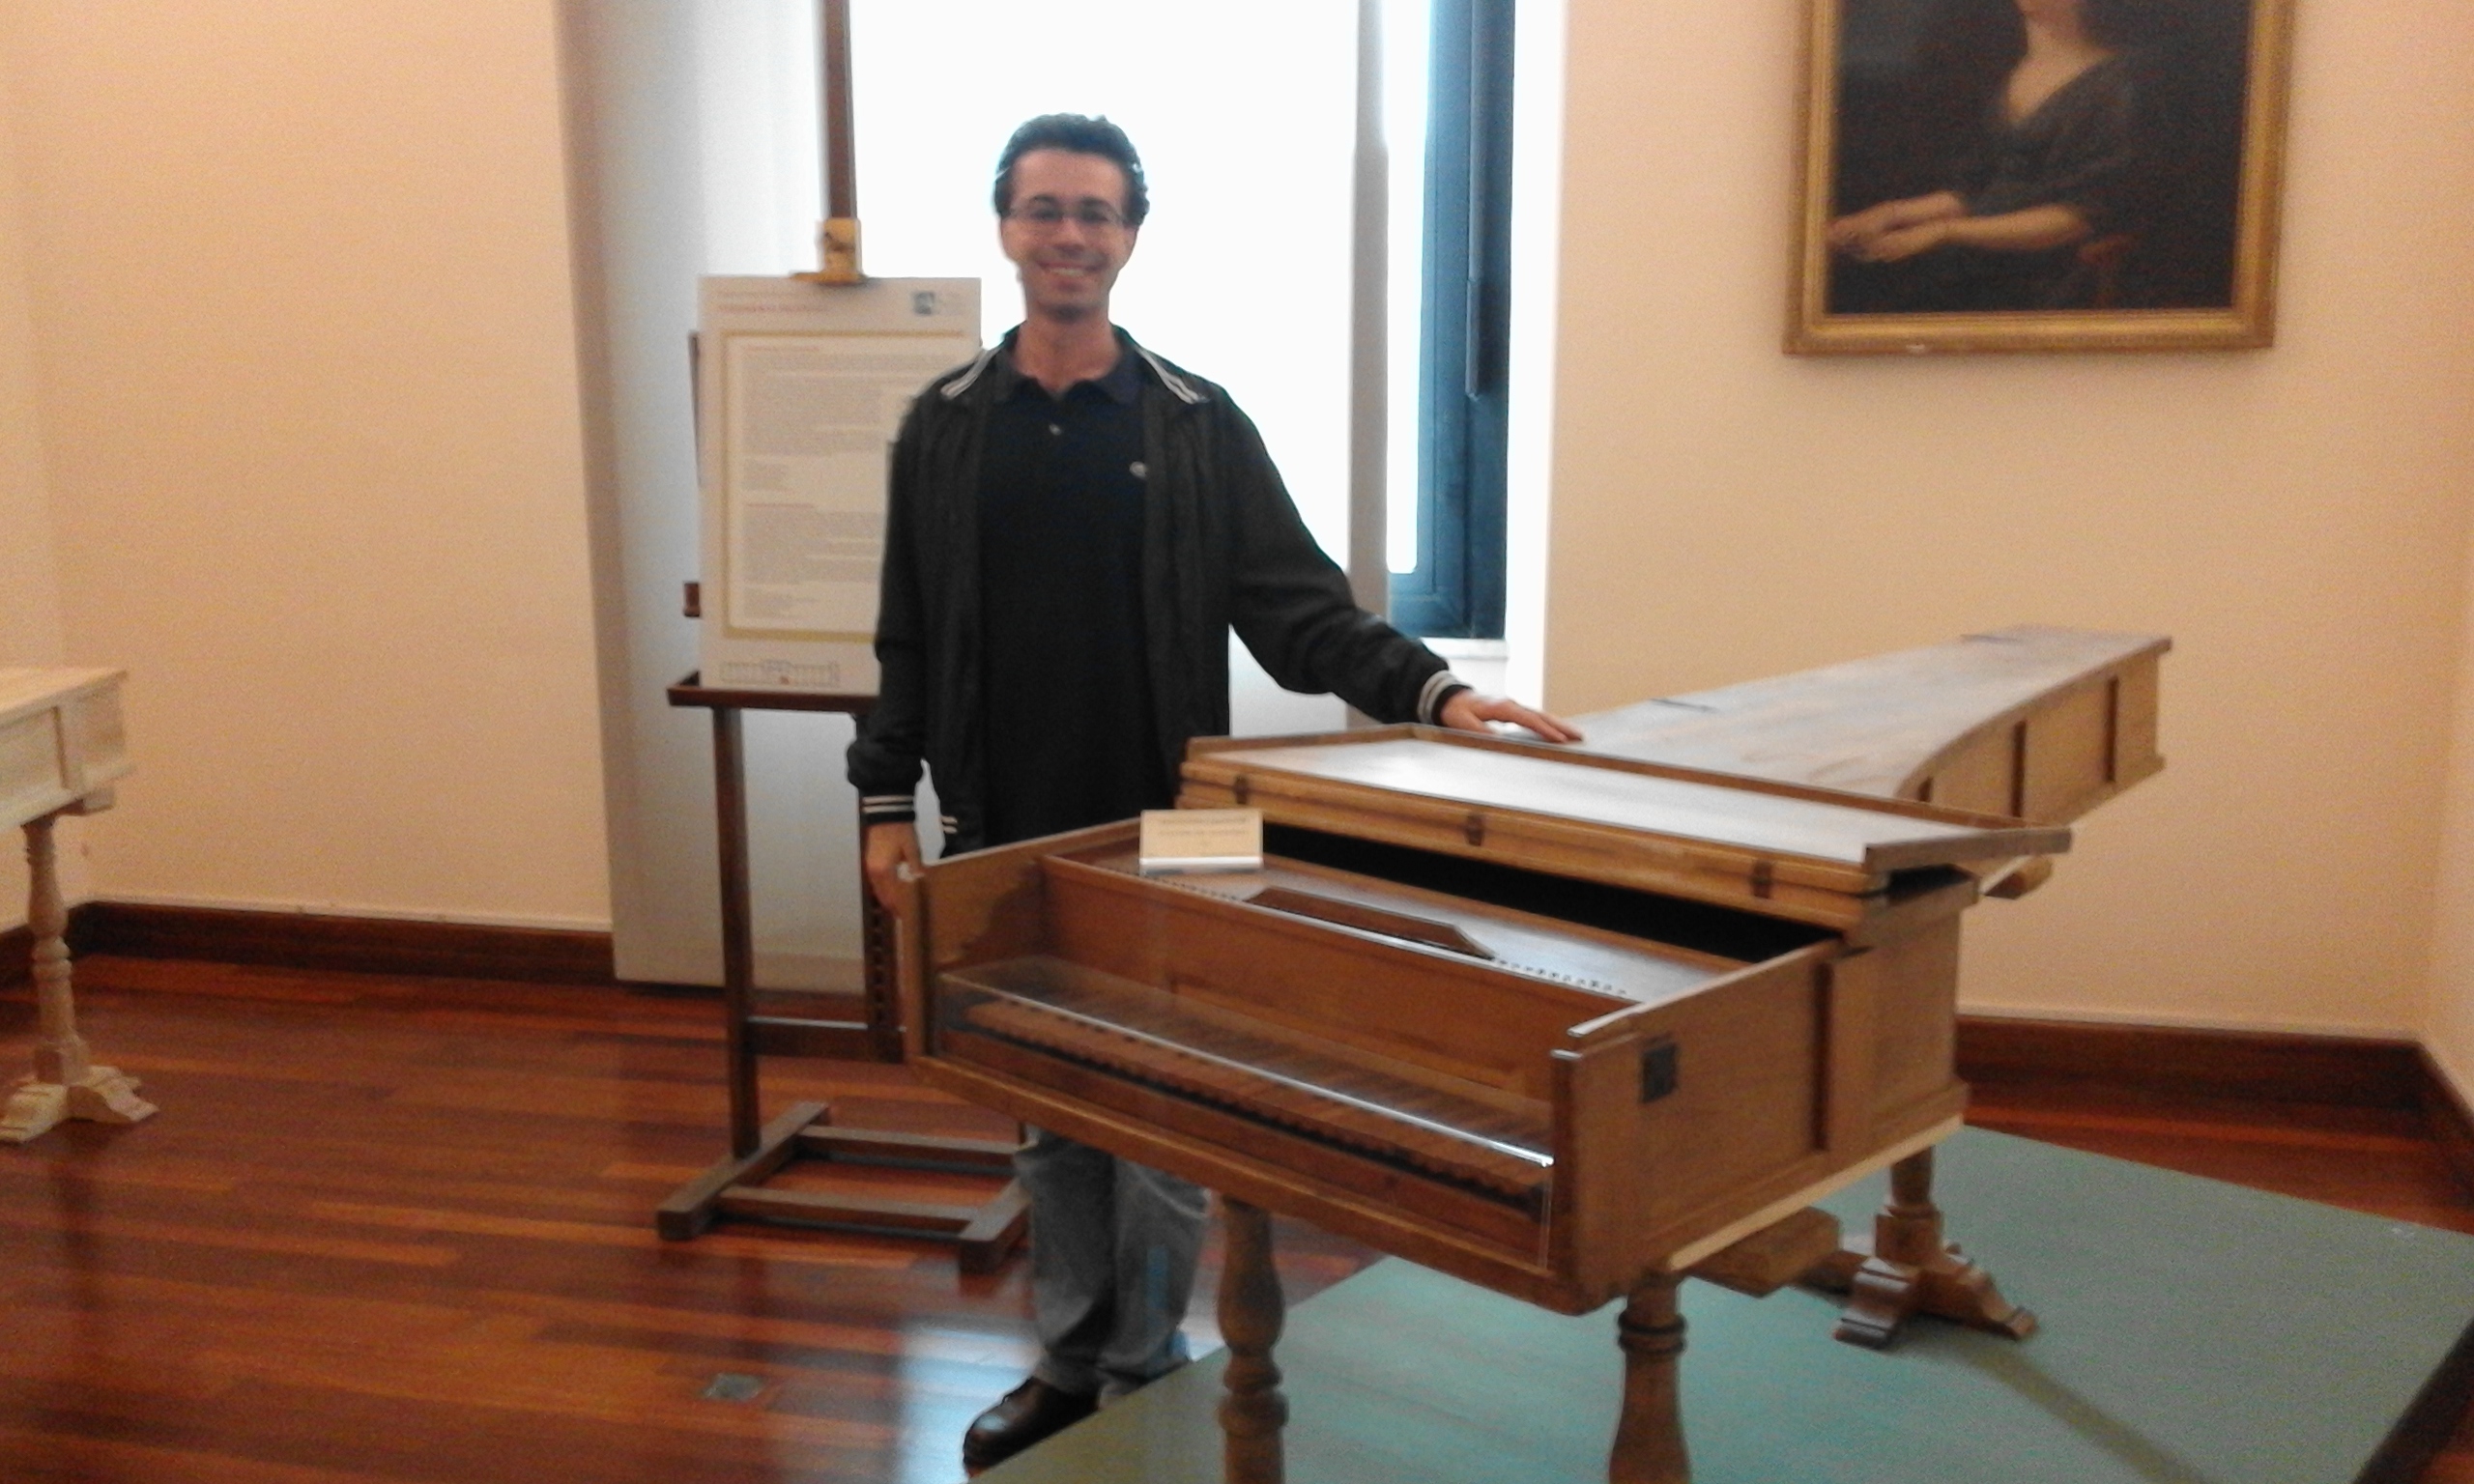 Форте Пиано 1722 Бартоломео Кристофори -Музей музыкальных инструментов в Риме - Адел гид в Риме